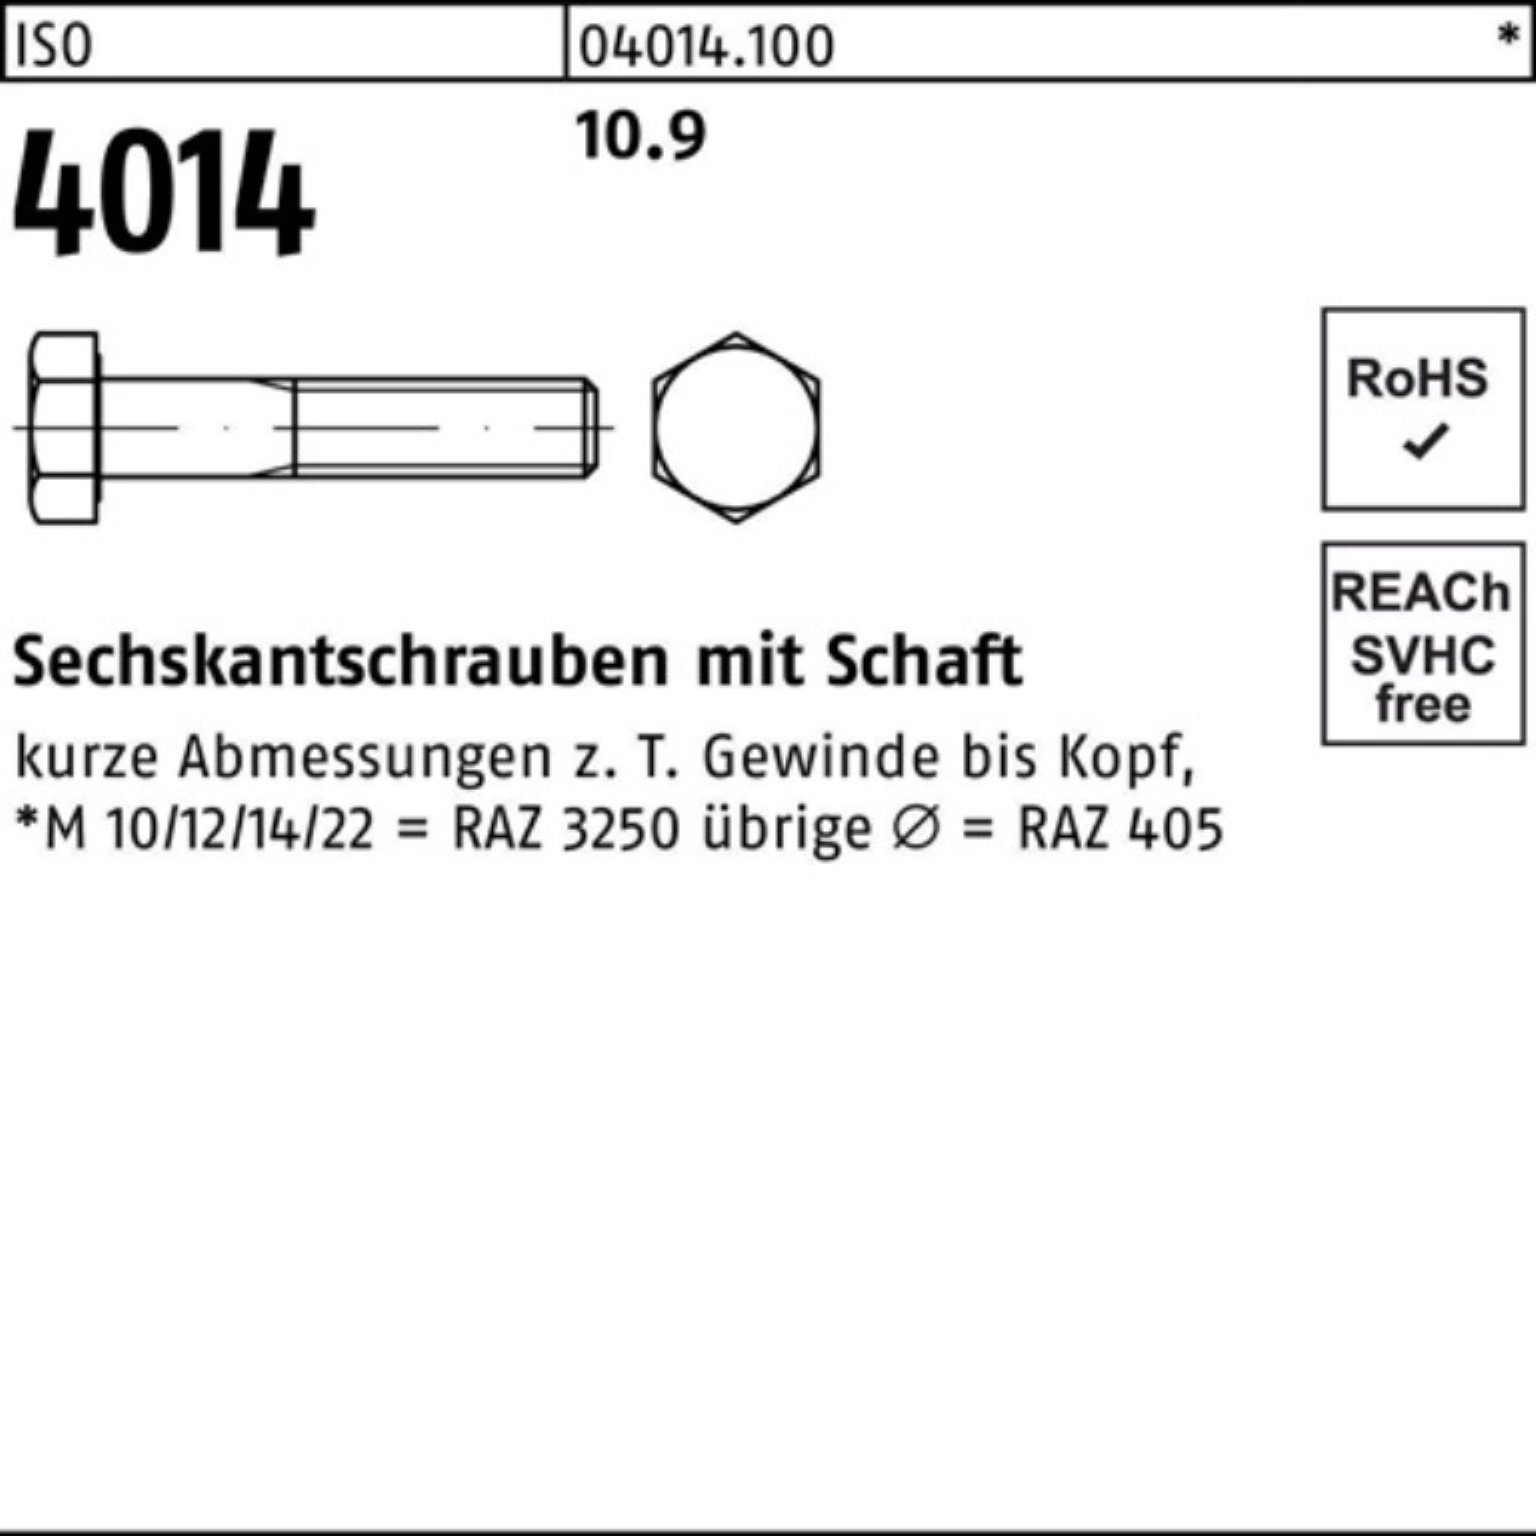 M33x IS Sechskantschraube Schaft Bufab Sechskantschraube 1 100er Stück Pack 110 4014 ISO 10.9